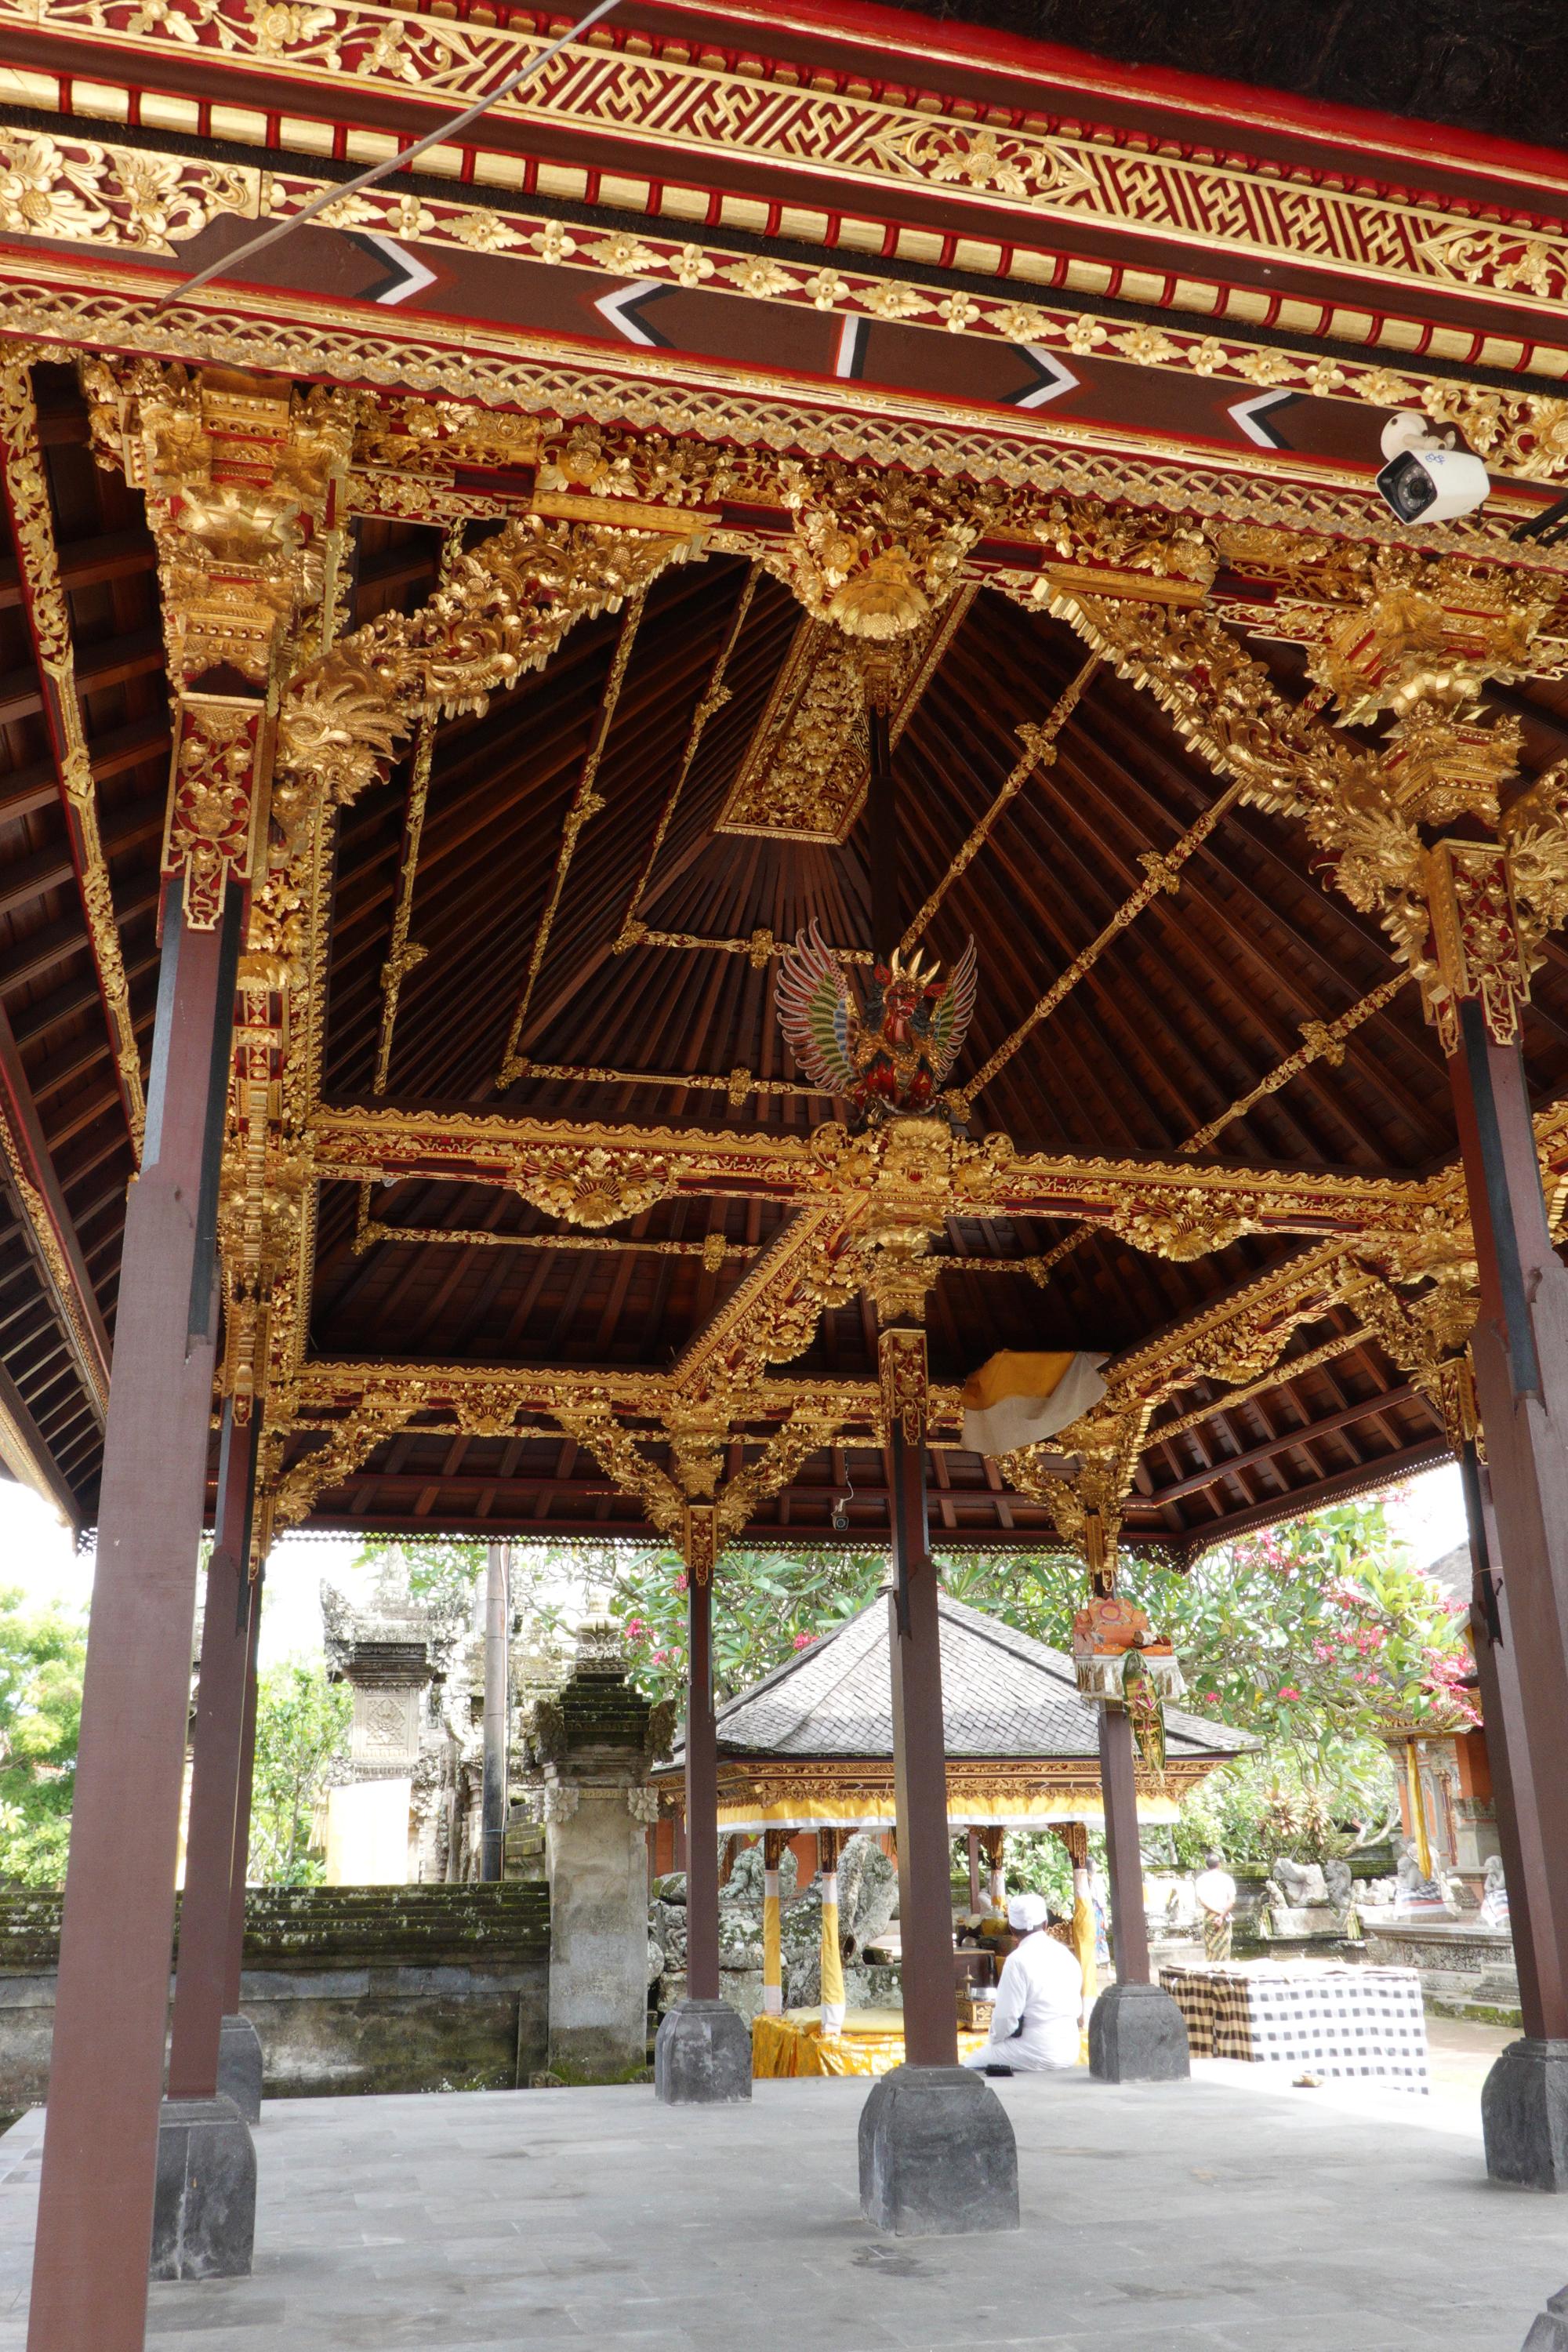 Bali - Batuan Temple #3